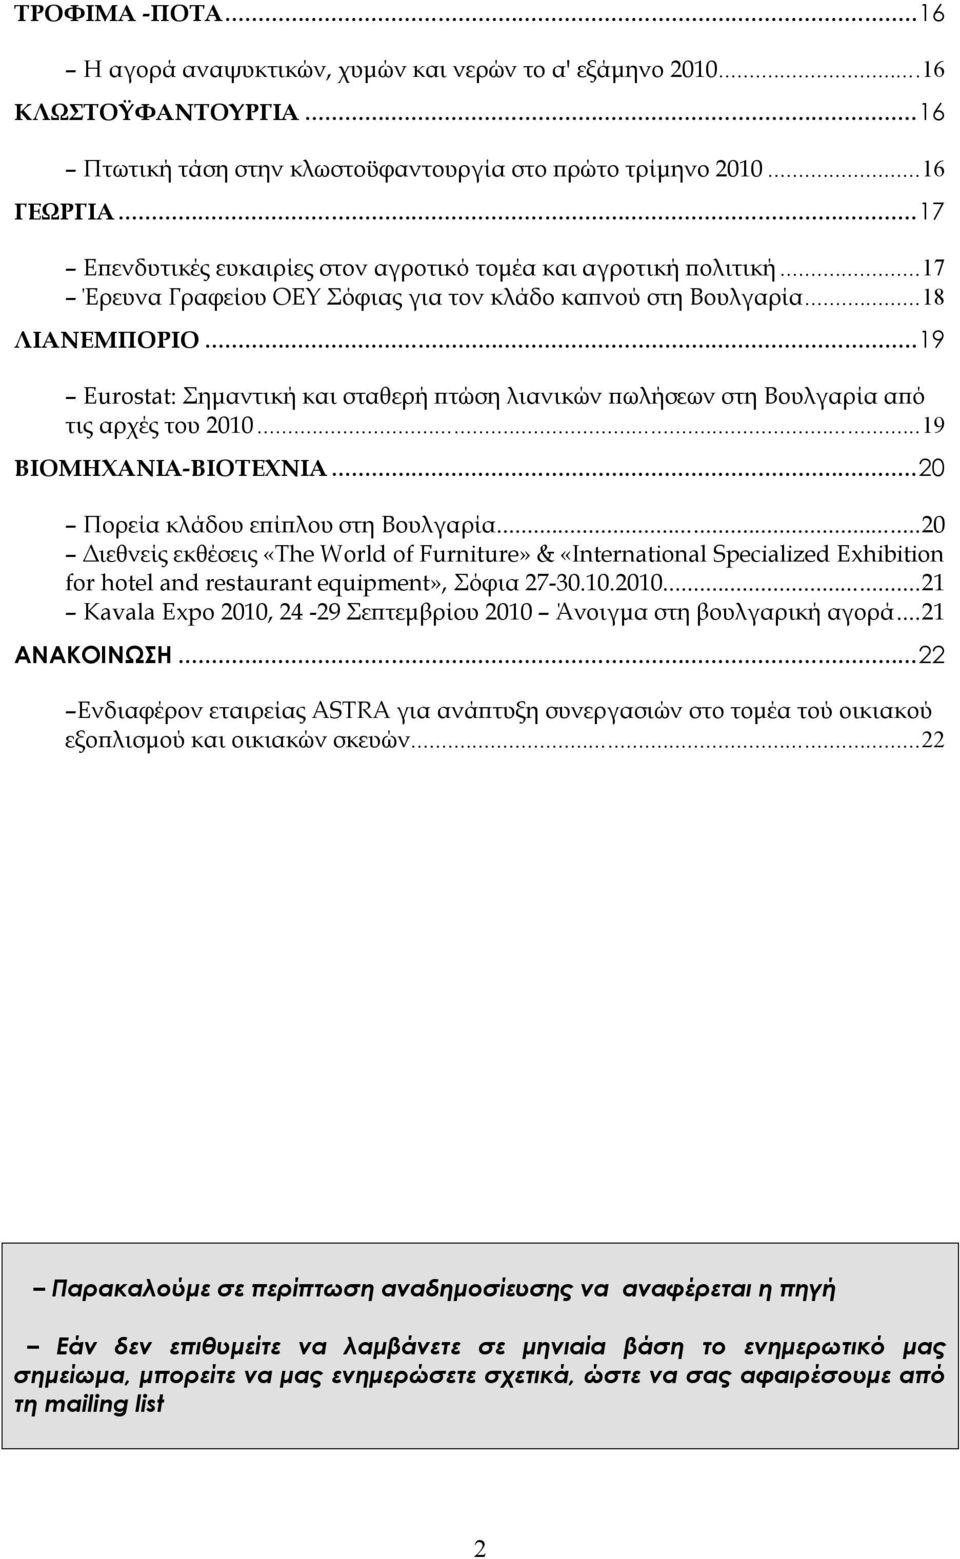 ..19 Εurostat: Σημαντική και σταθερή πτώση λιανικών πωλήσεων στη Βουλγαρία από τις αρχές του 2010...19 ΒΙΟΜΗΧΑΝΙΑ-ΒΙΟΤΕΧΝΙΑ...20 Πορεία κλάδου επίπλου στη Βουλγαρία.